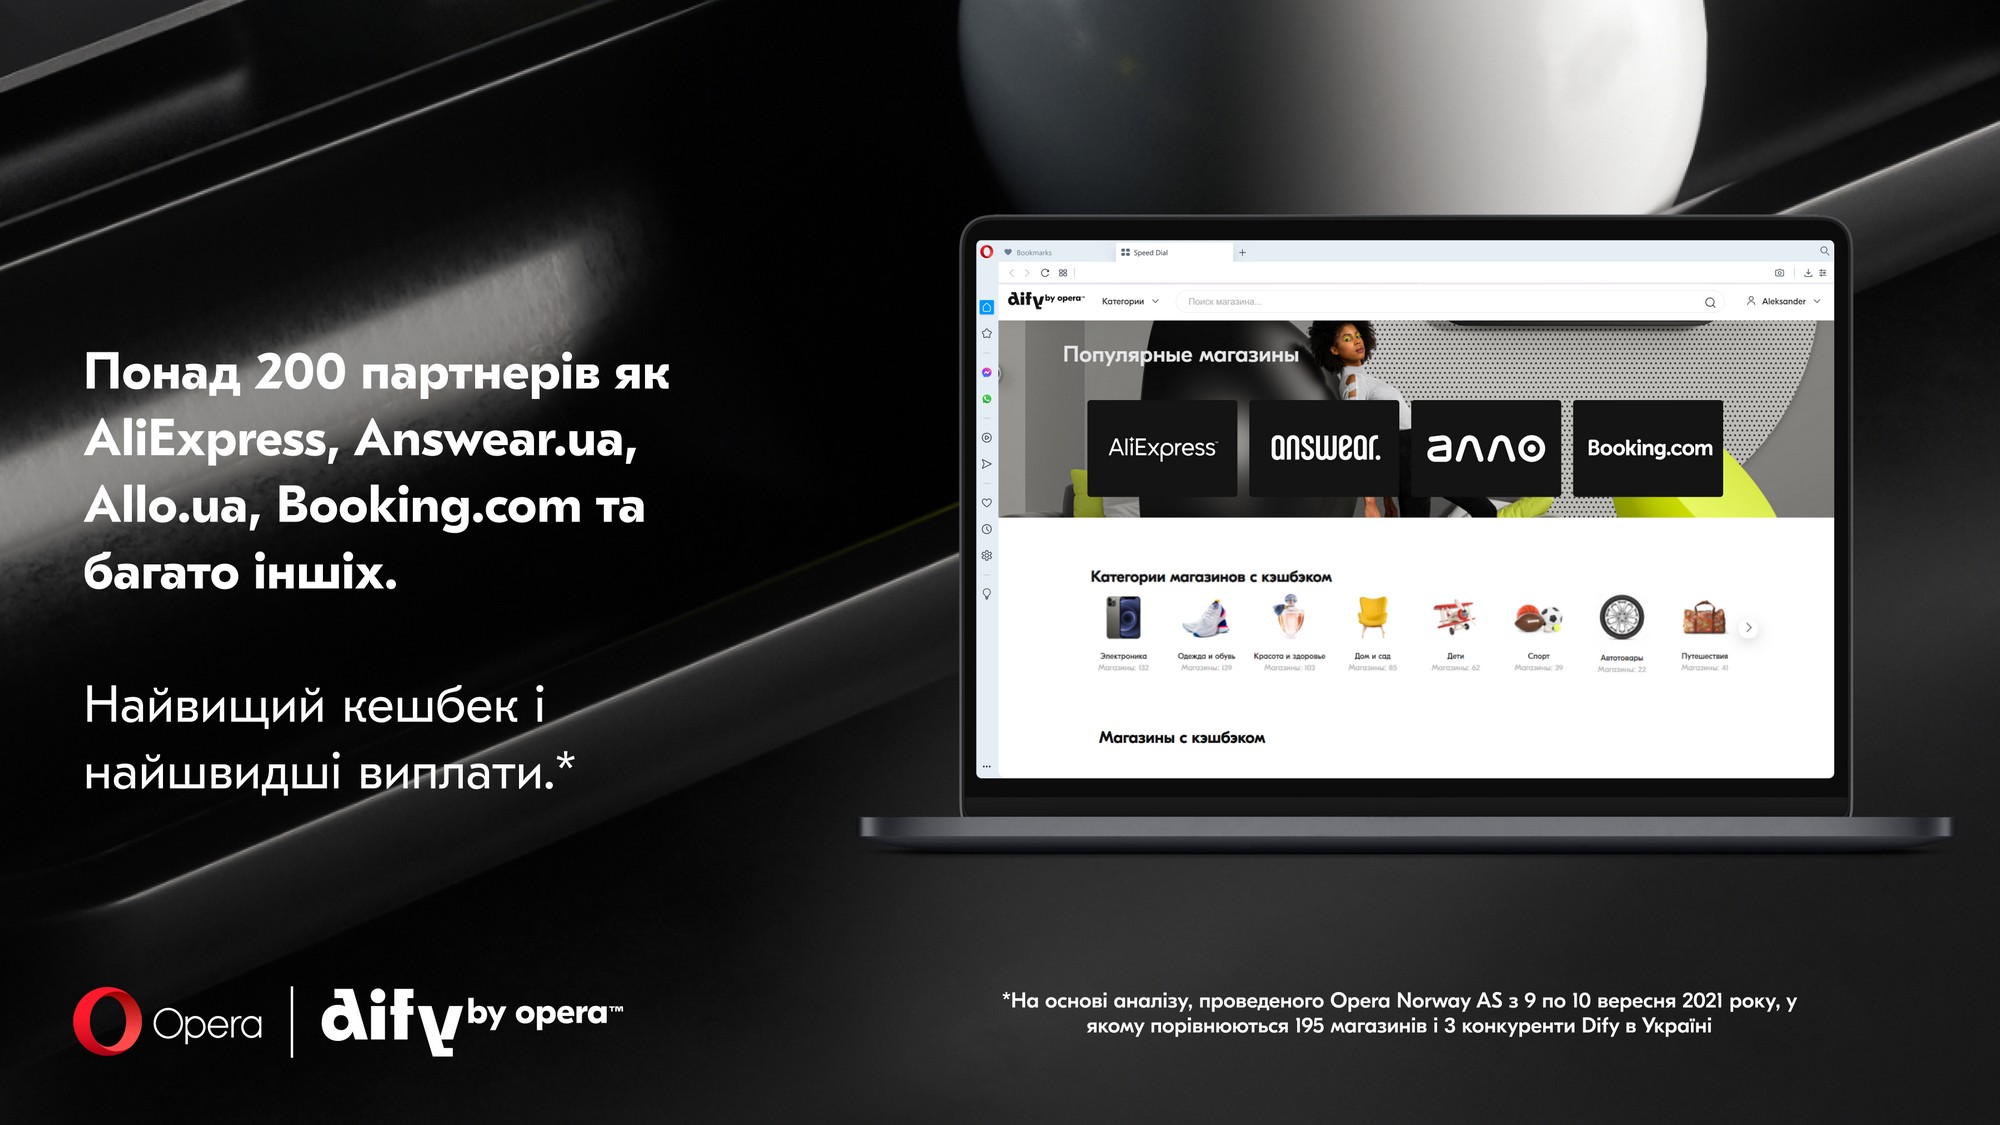 Opera запускає в Україні кешбек-сервіс Dify, інтегрований у браузер - 200 магазинів та ставка до 30%